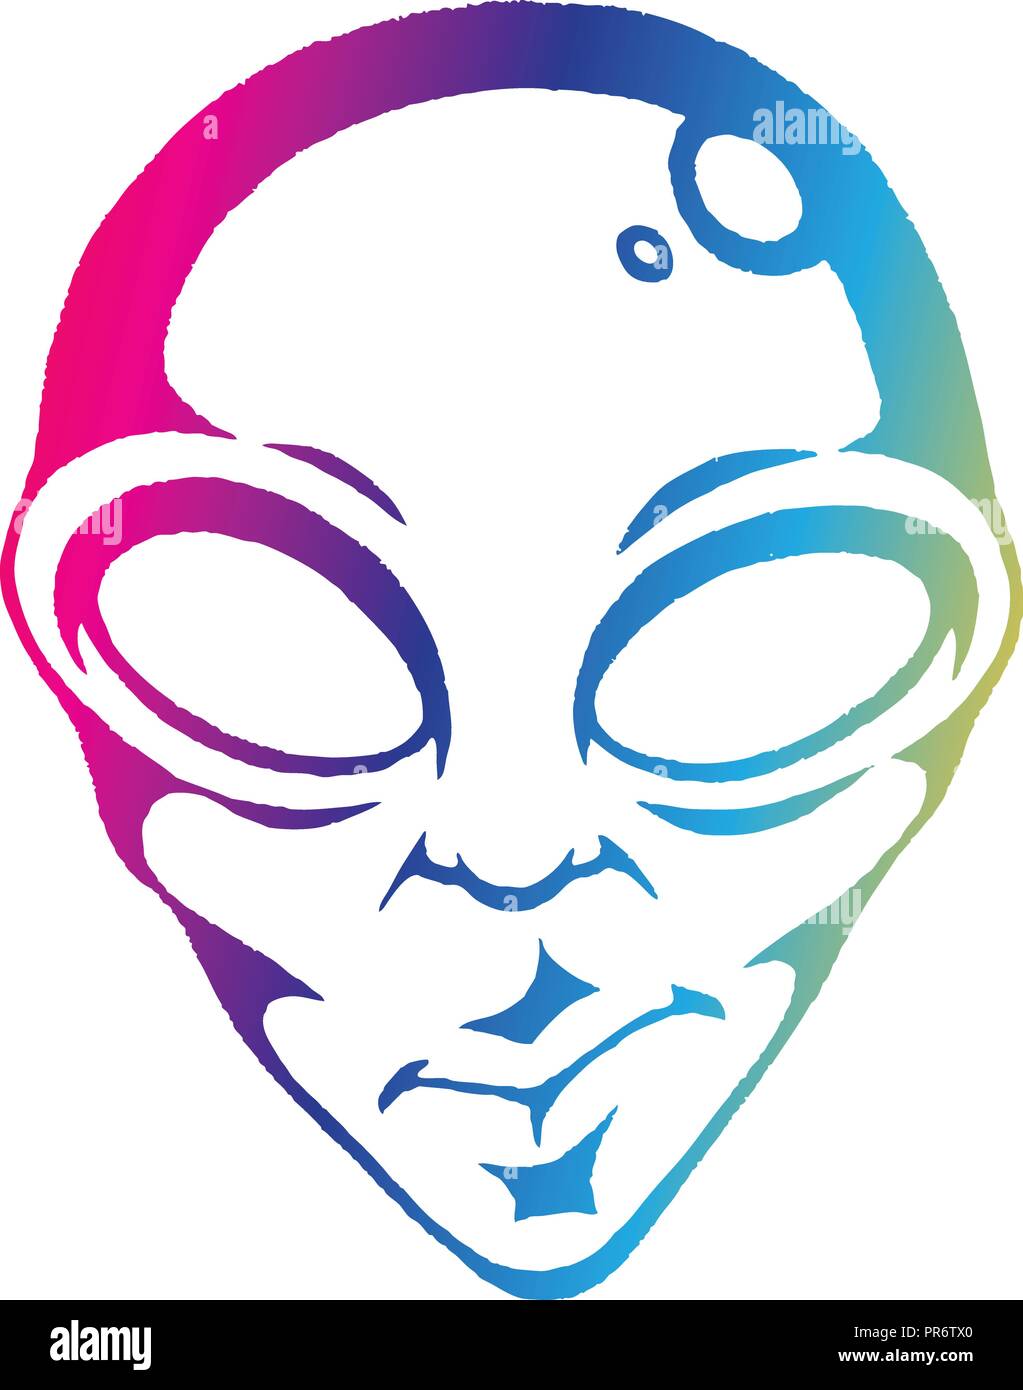 Illustrazione di arcobaleno colorato inchiostro vettorializzare schizzo di Alien Face isolato su uno sfondo bianco Illustrazione Vettoriale